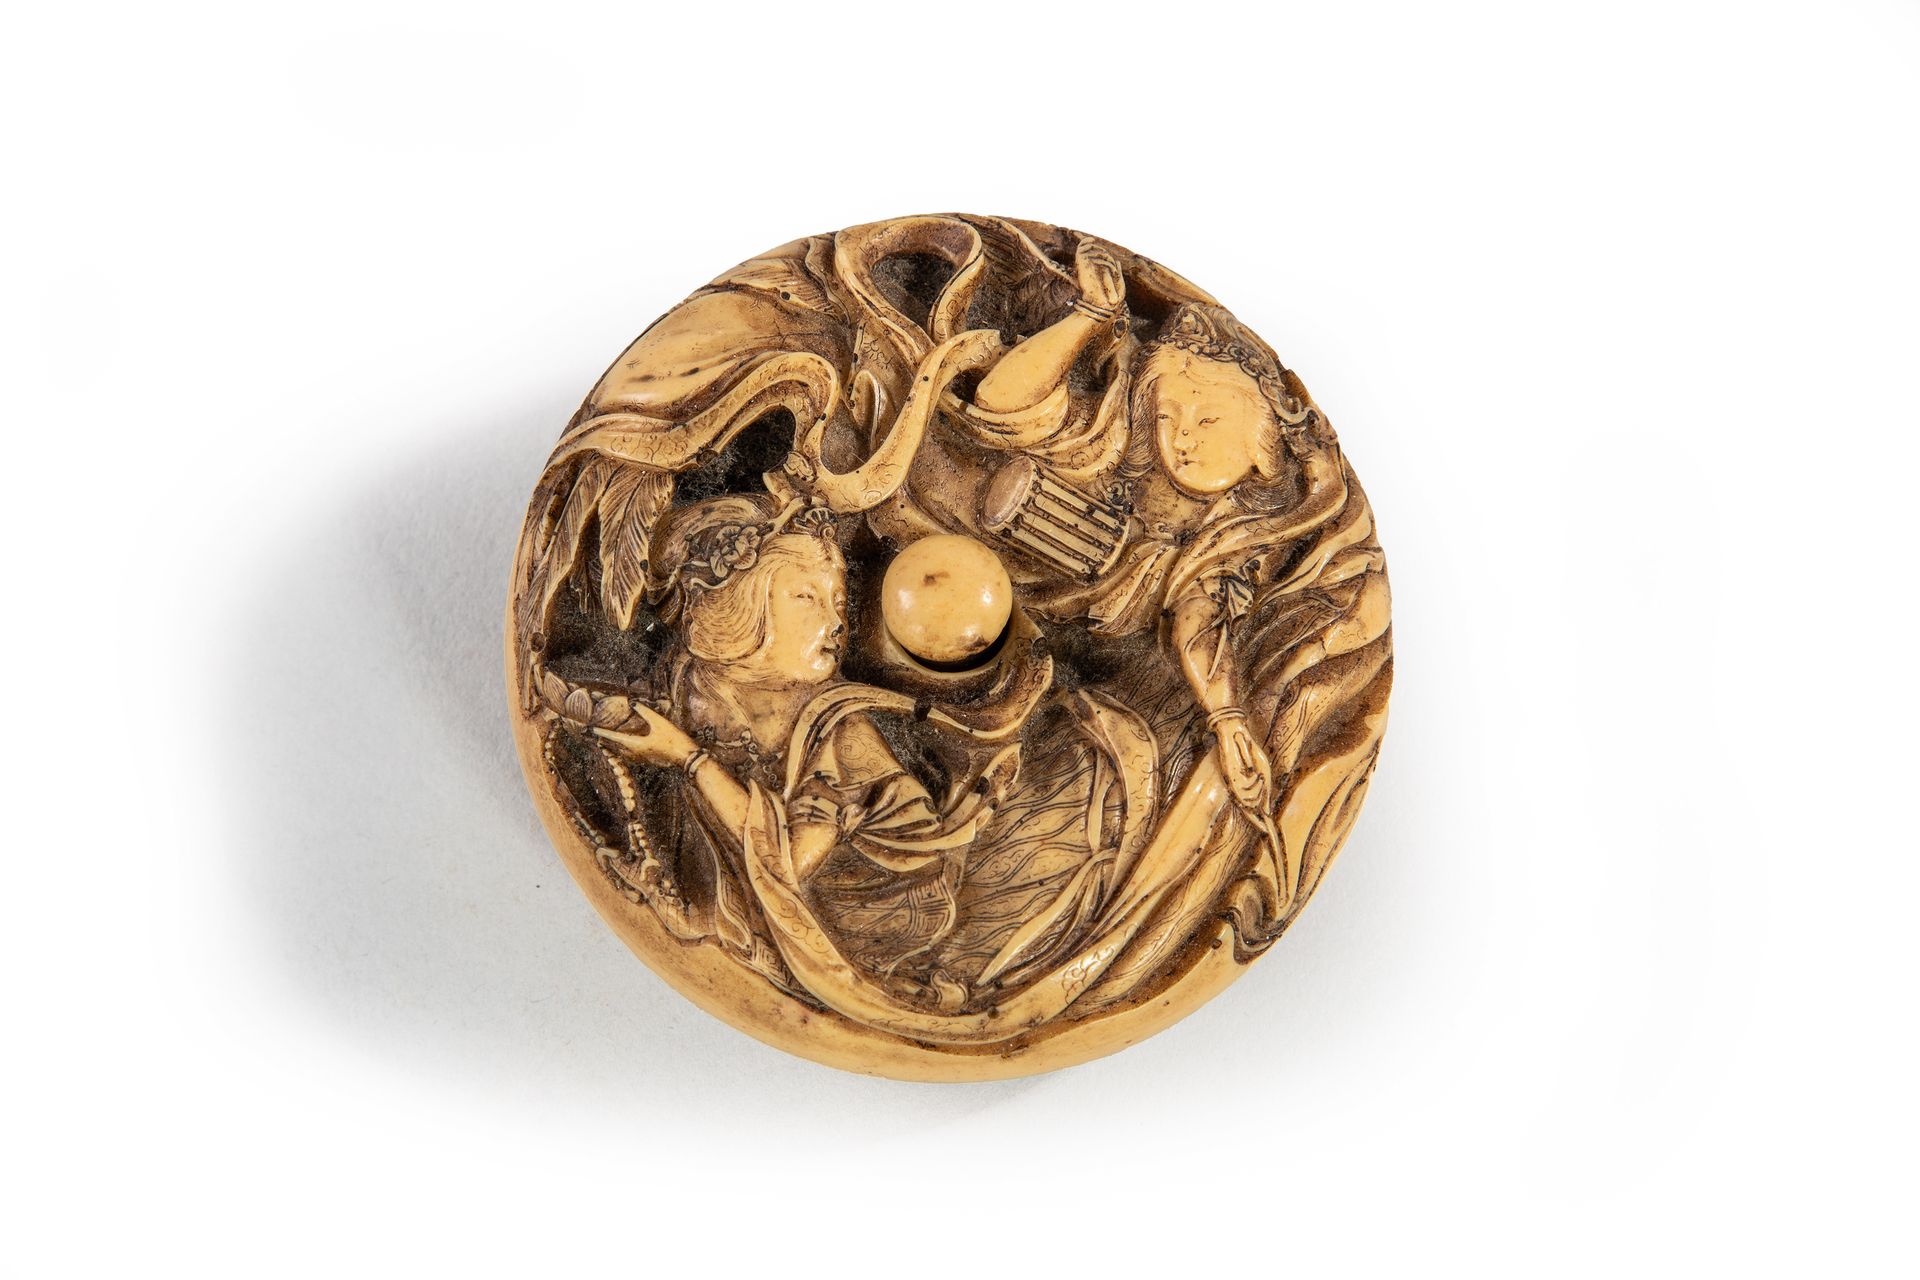 Null 
圆型艺妓网签 雕刻的骨质曼珠。

日本 19世纪末

直径5.5厘米